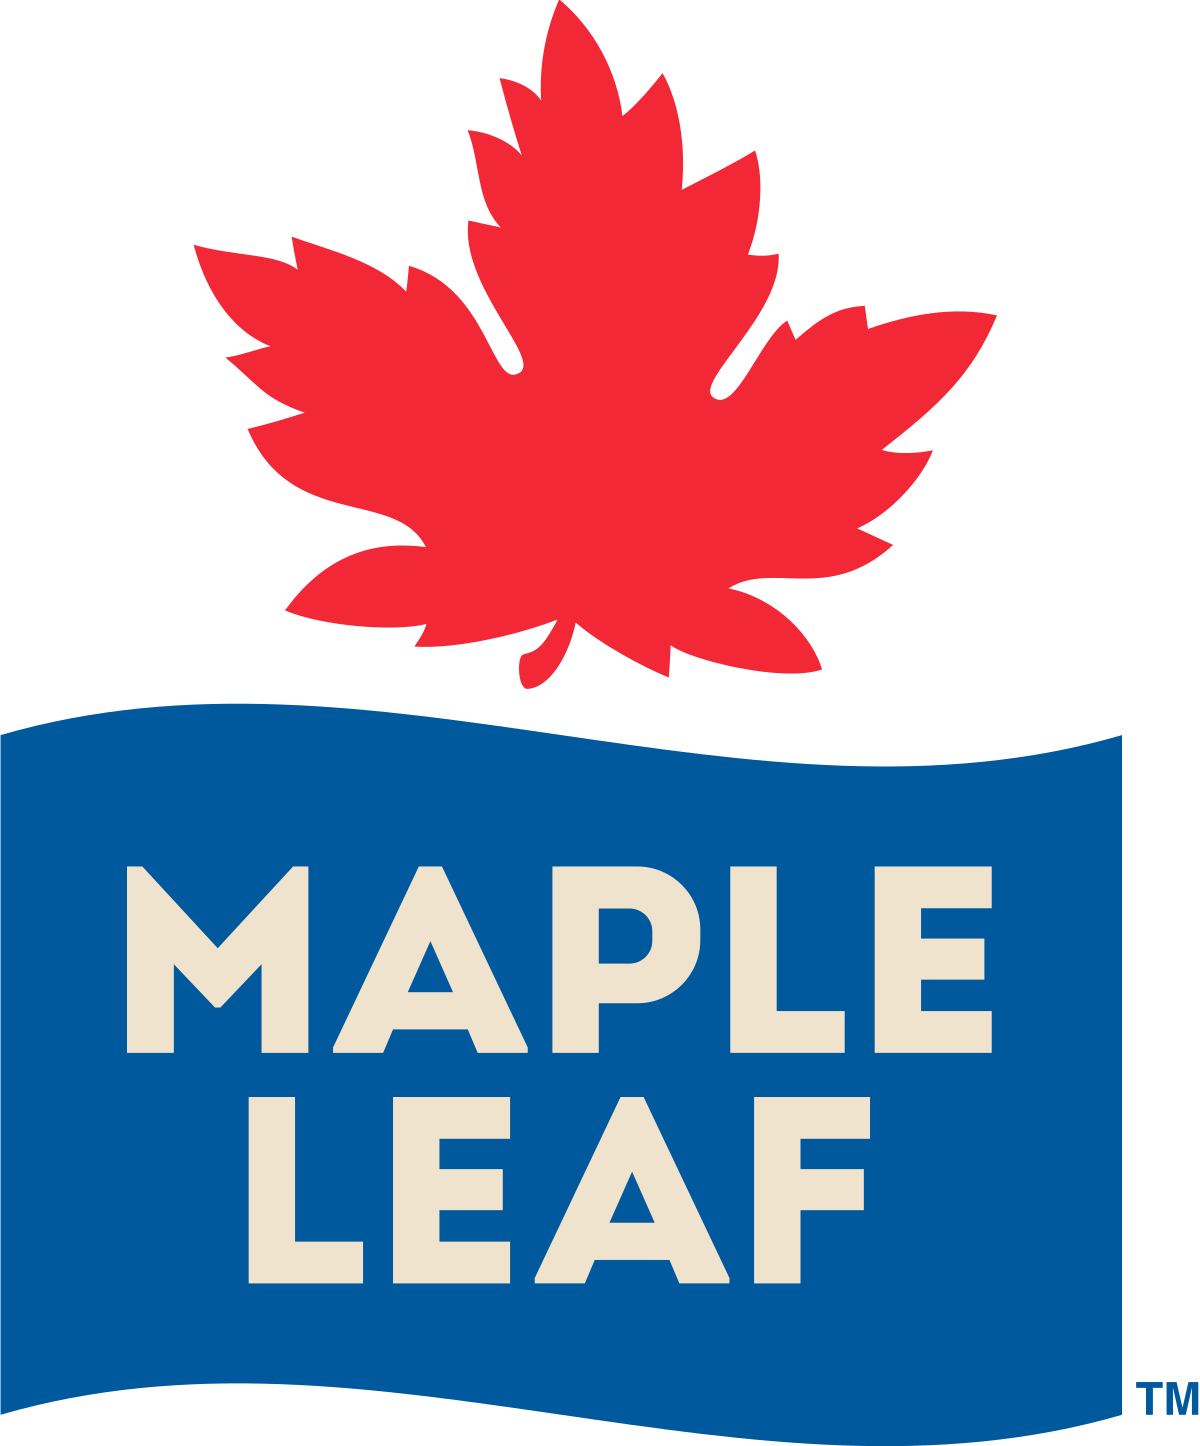 Maple Leaf Foods - Wikipedia